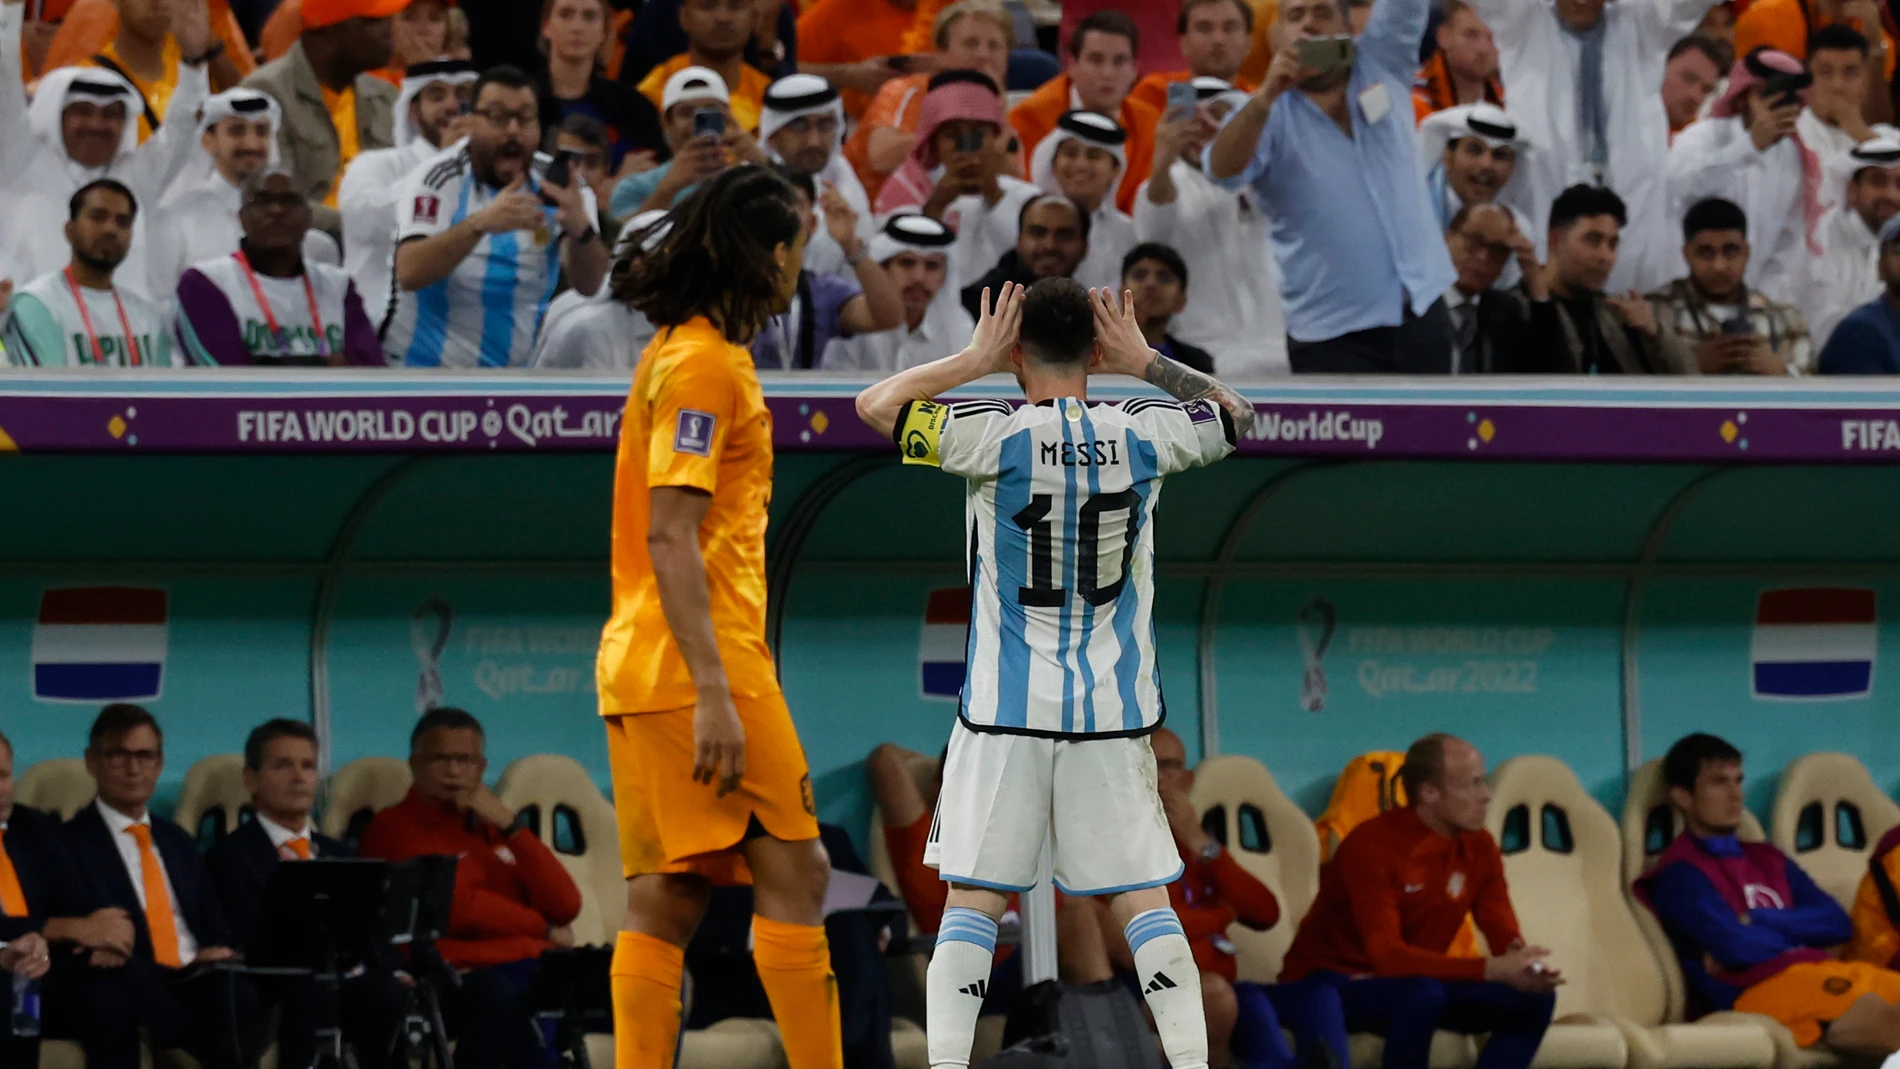 Lionel Messi celebra el gol que marcó a Países Bajos imitando a Topo Gigio, como hacía Riquelme, "enemigo" de Van Gaal